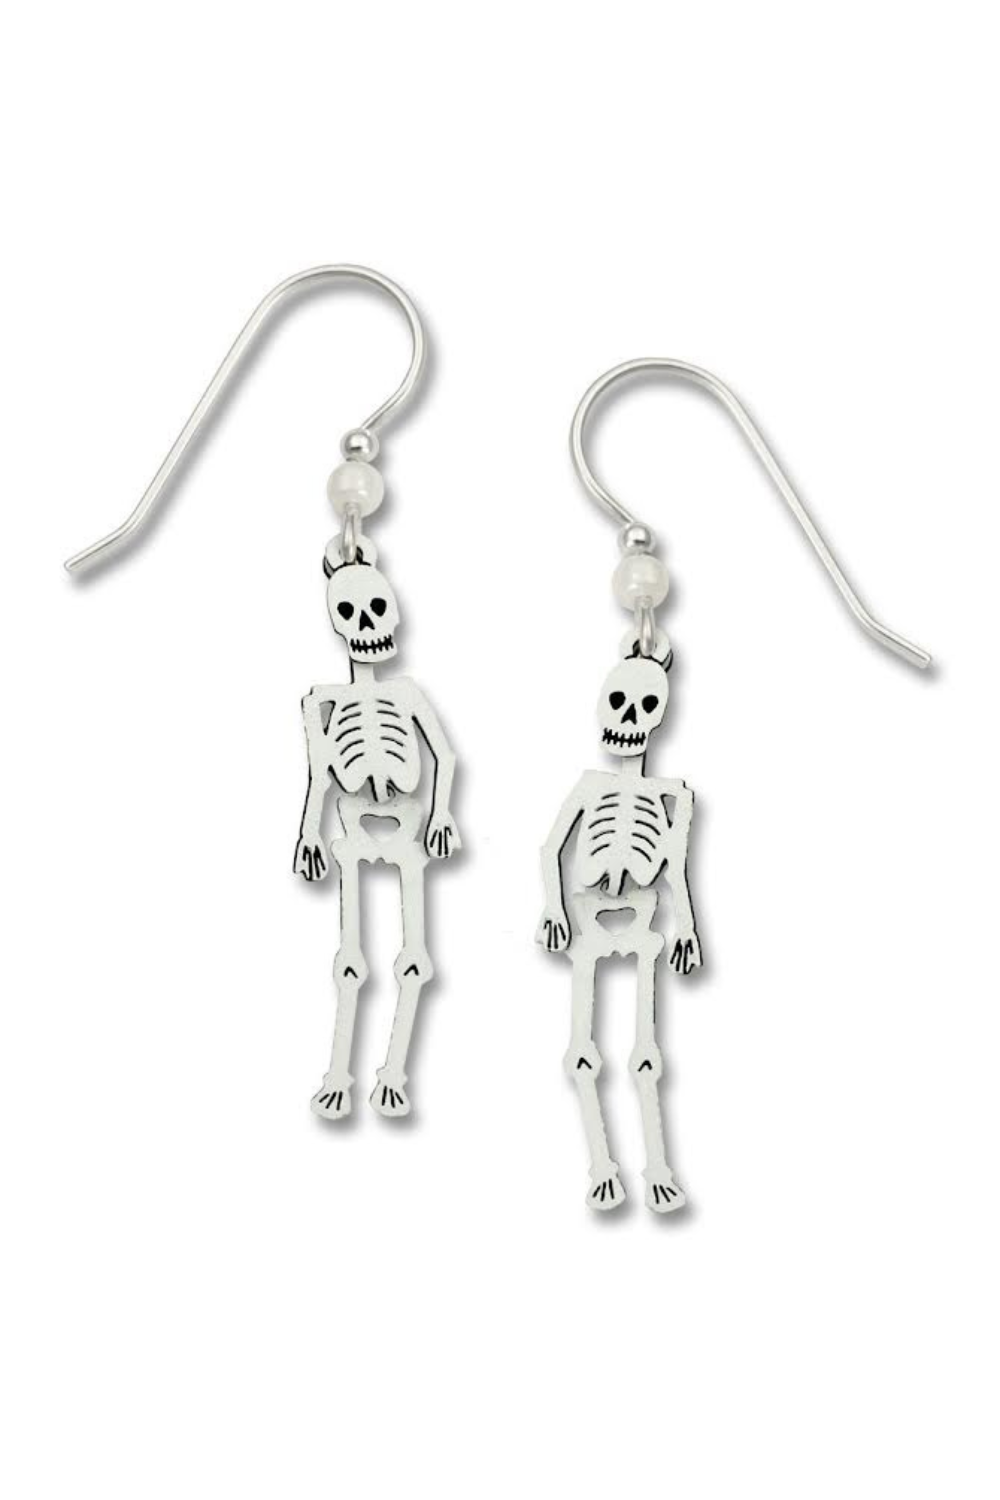 Sienna Sky Halloween Skeleton Earrings